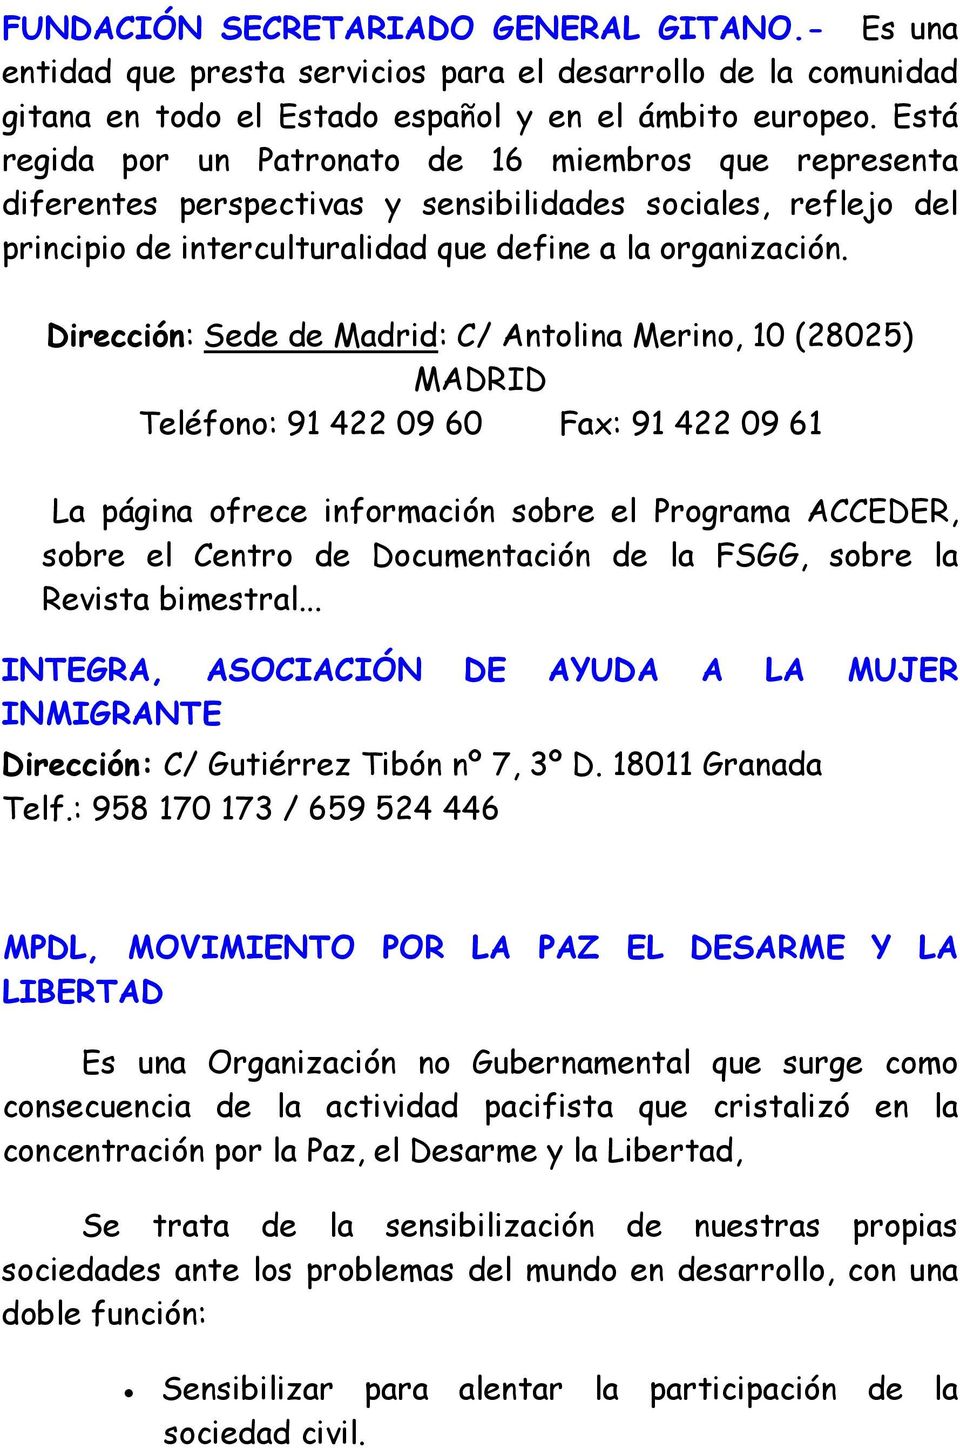 Dirección: Sede de Madrid: C/ Antolina Merino, 10 (28025) MADRID Teléfono: 91 422 09 60 Fax: 91 422 09 61 La página ofrece información sobre el Programa ACCEDER, sobre el Centro de Documentación de